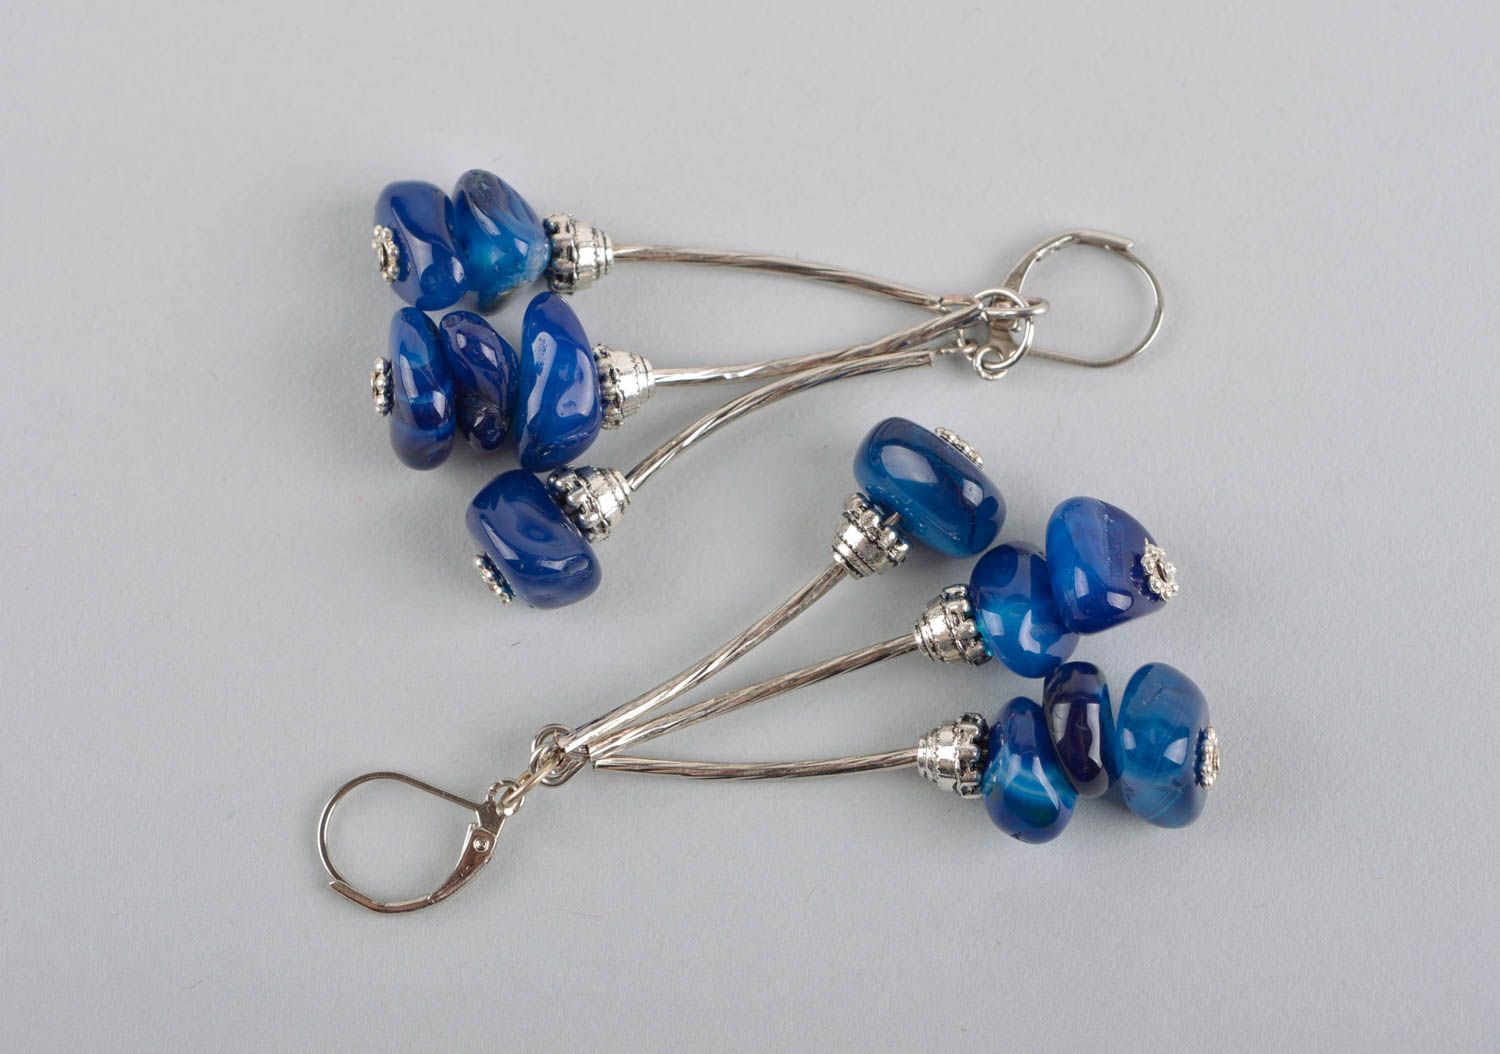 Long earrings handmade jewelry earrings for women stylish earrings gifts for her photo 5